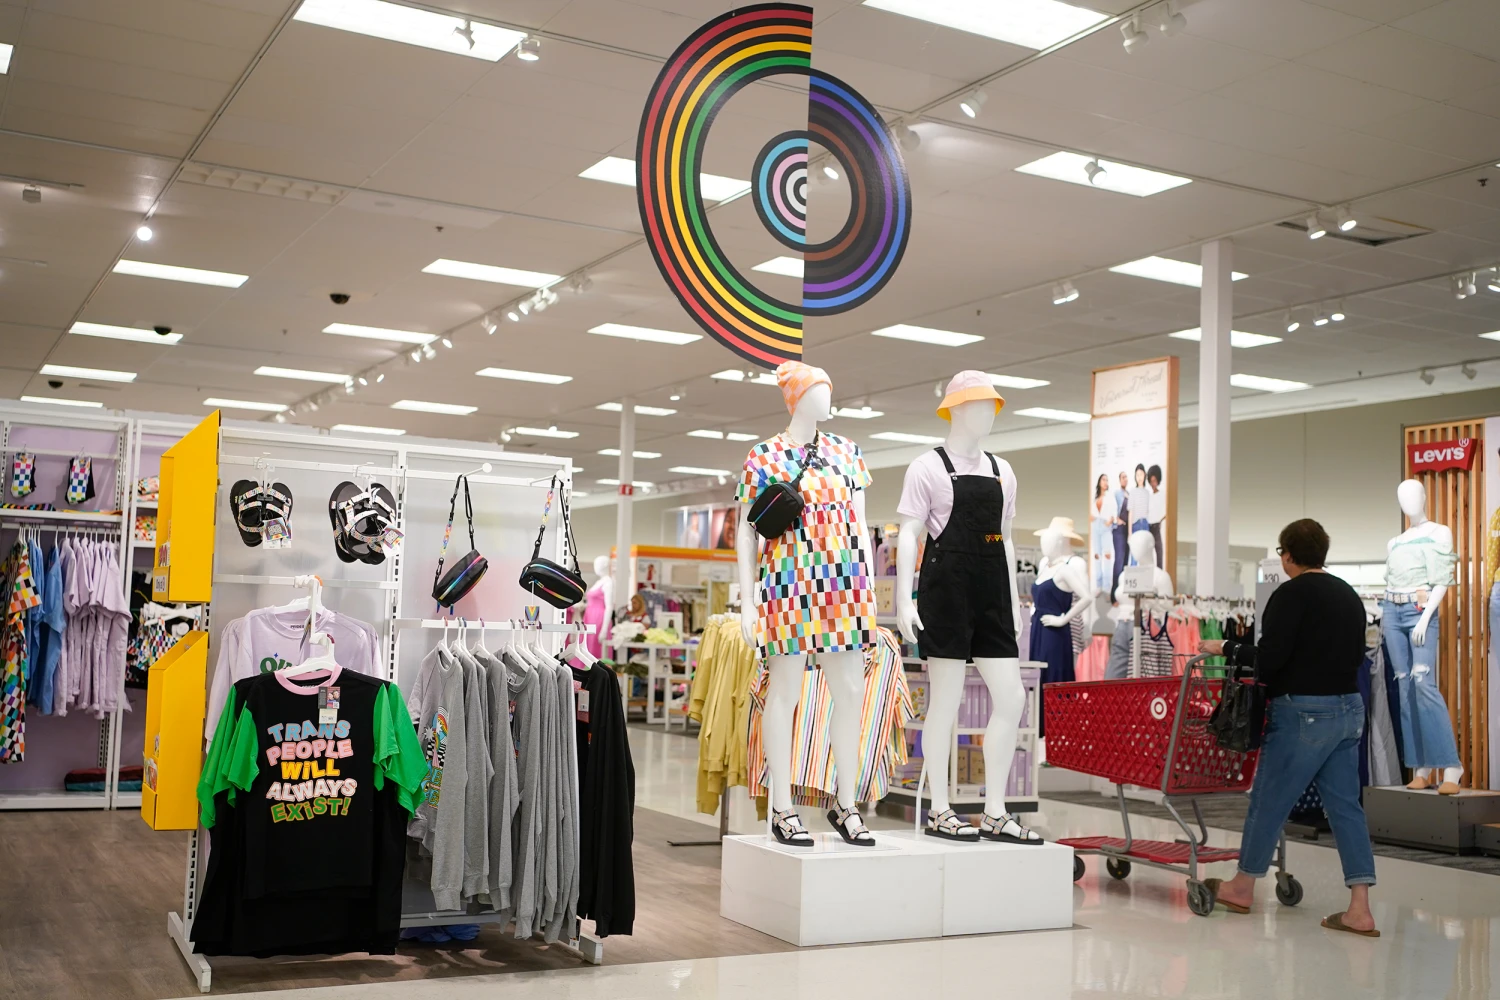 Target Announces Pride Collection, Cuts LGBTQ Children’s Attire